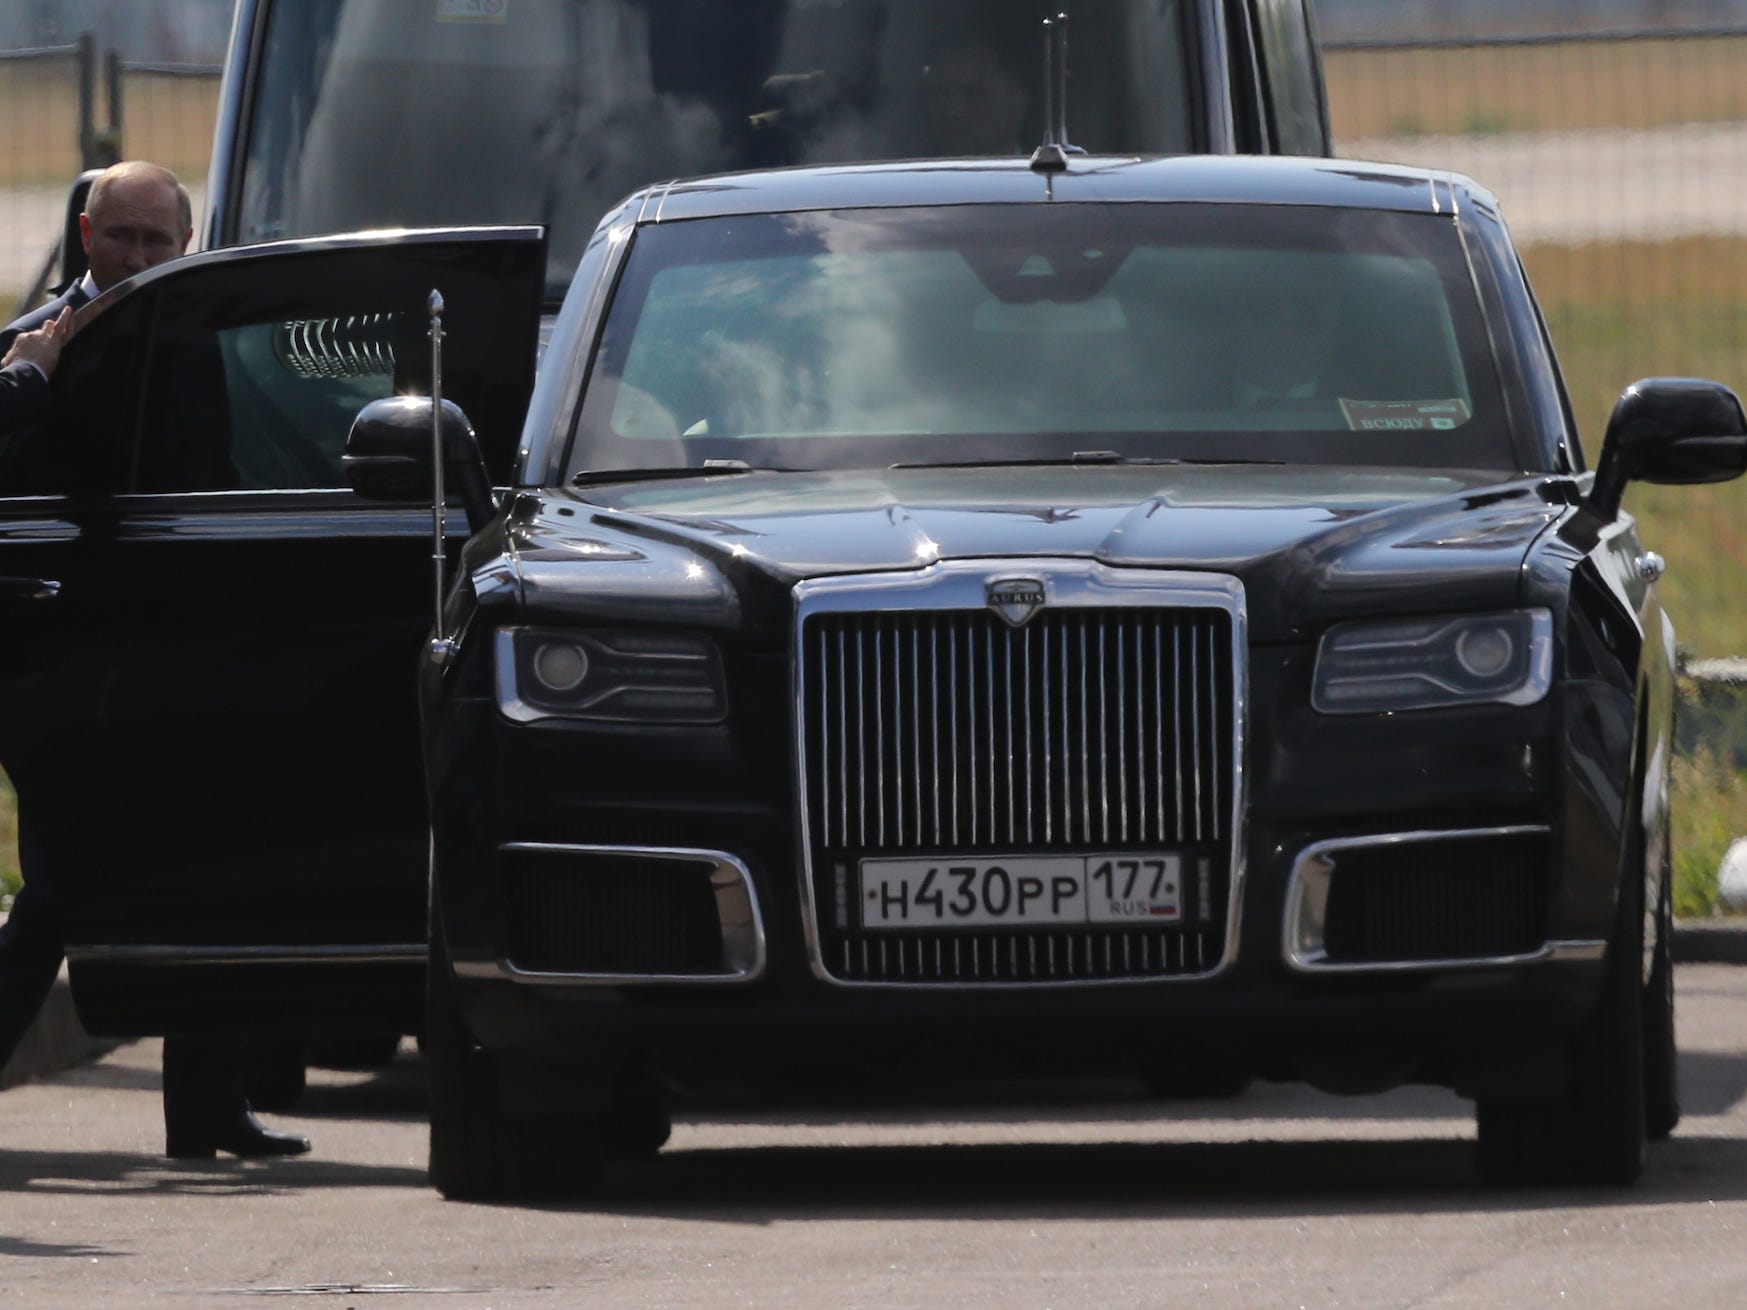 Putin nähert sich seiner Aurus-Limousine